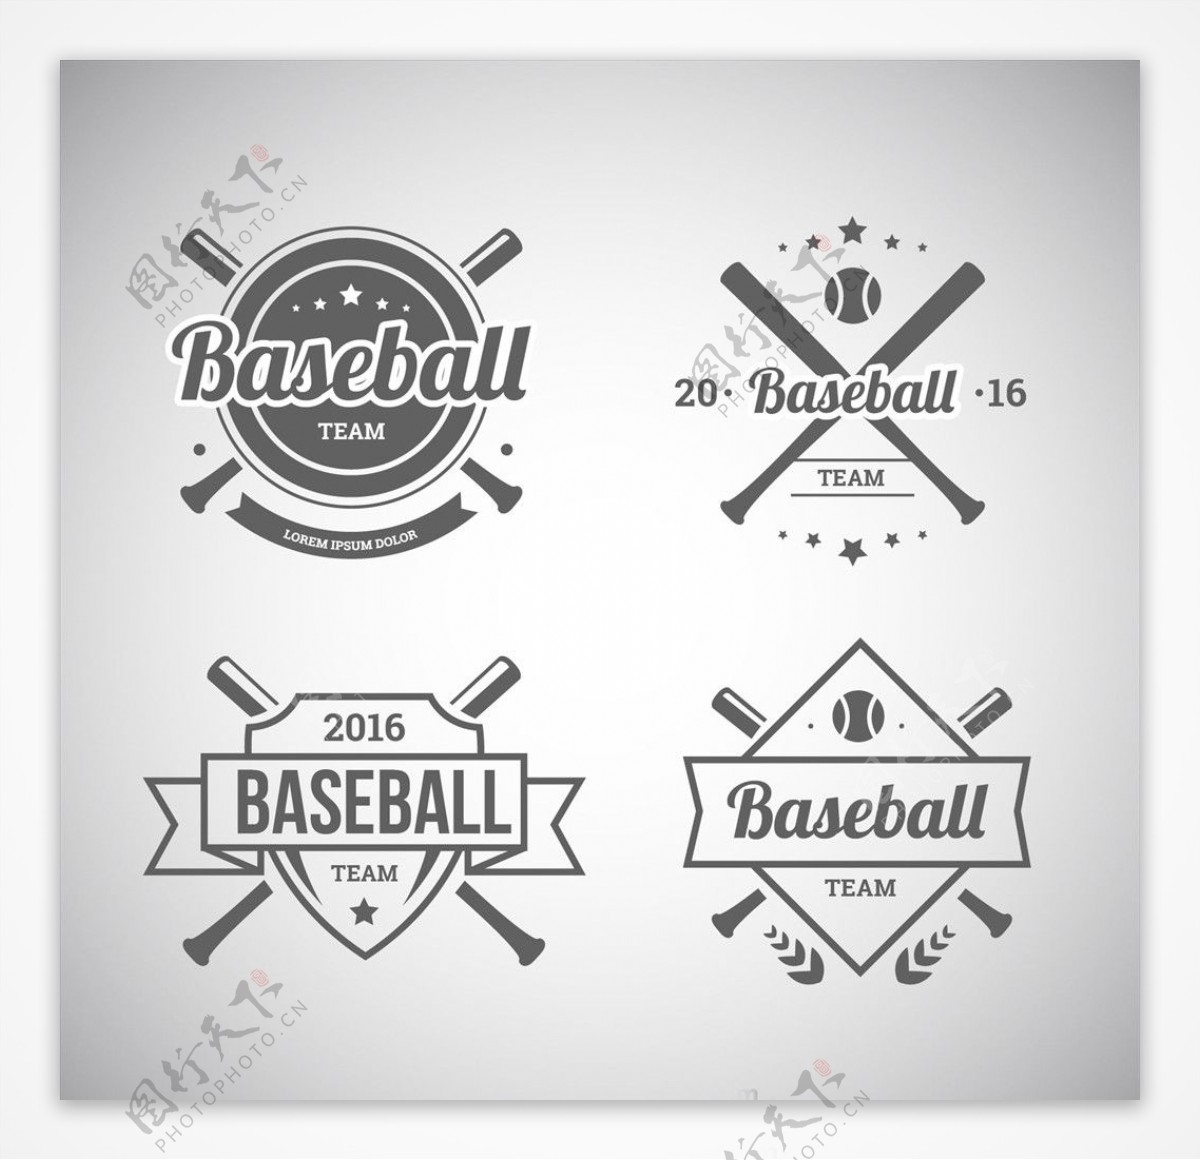 棒球比赛培训俱乐部标志